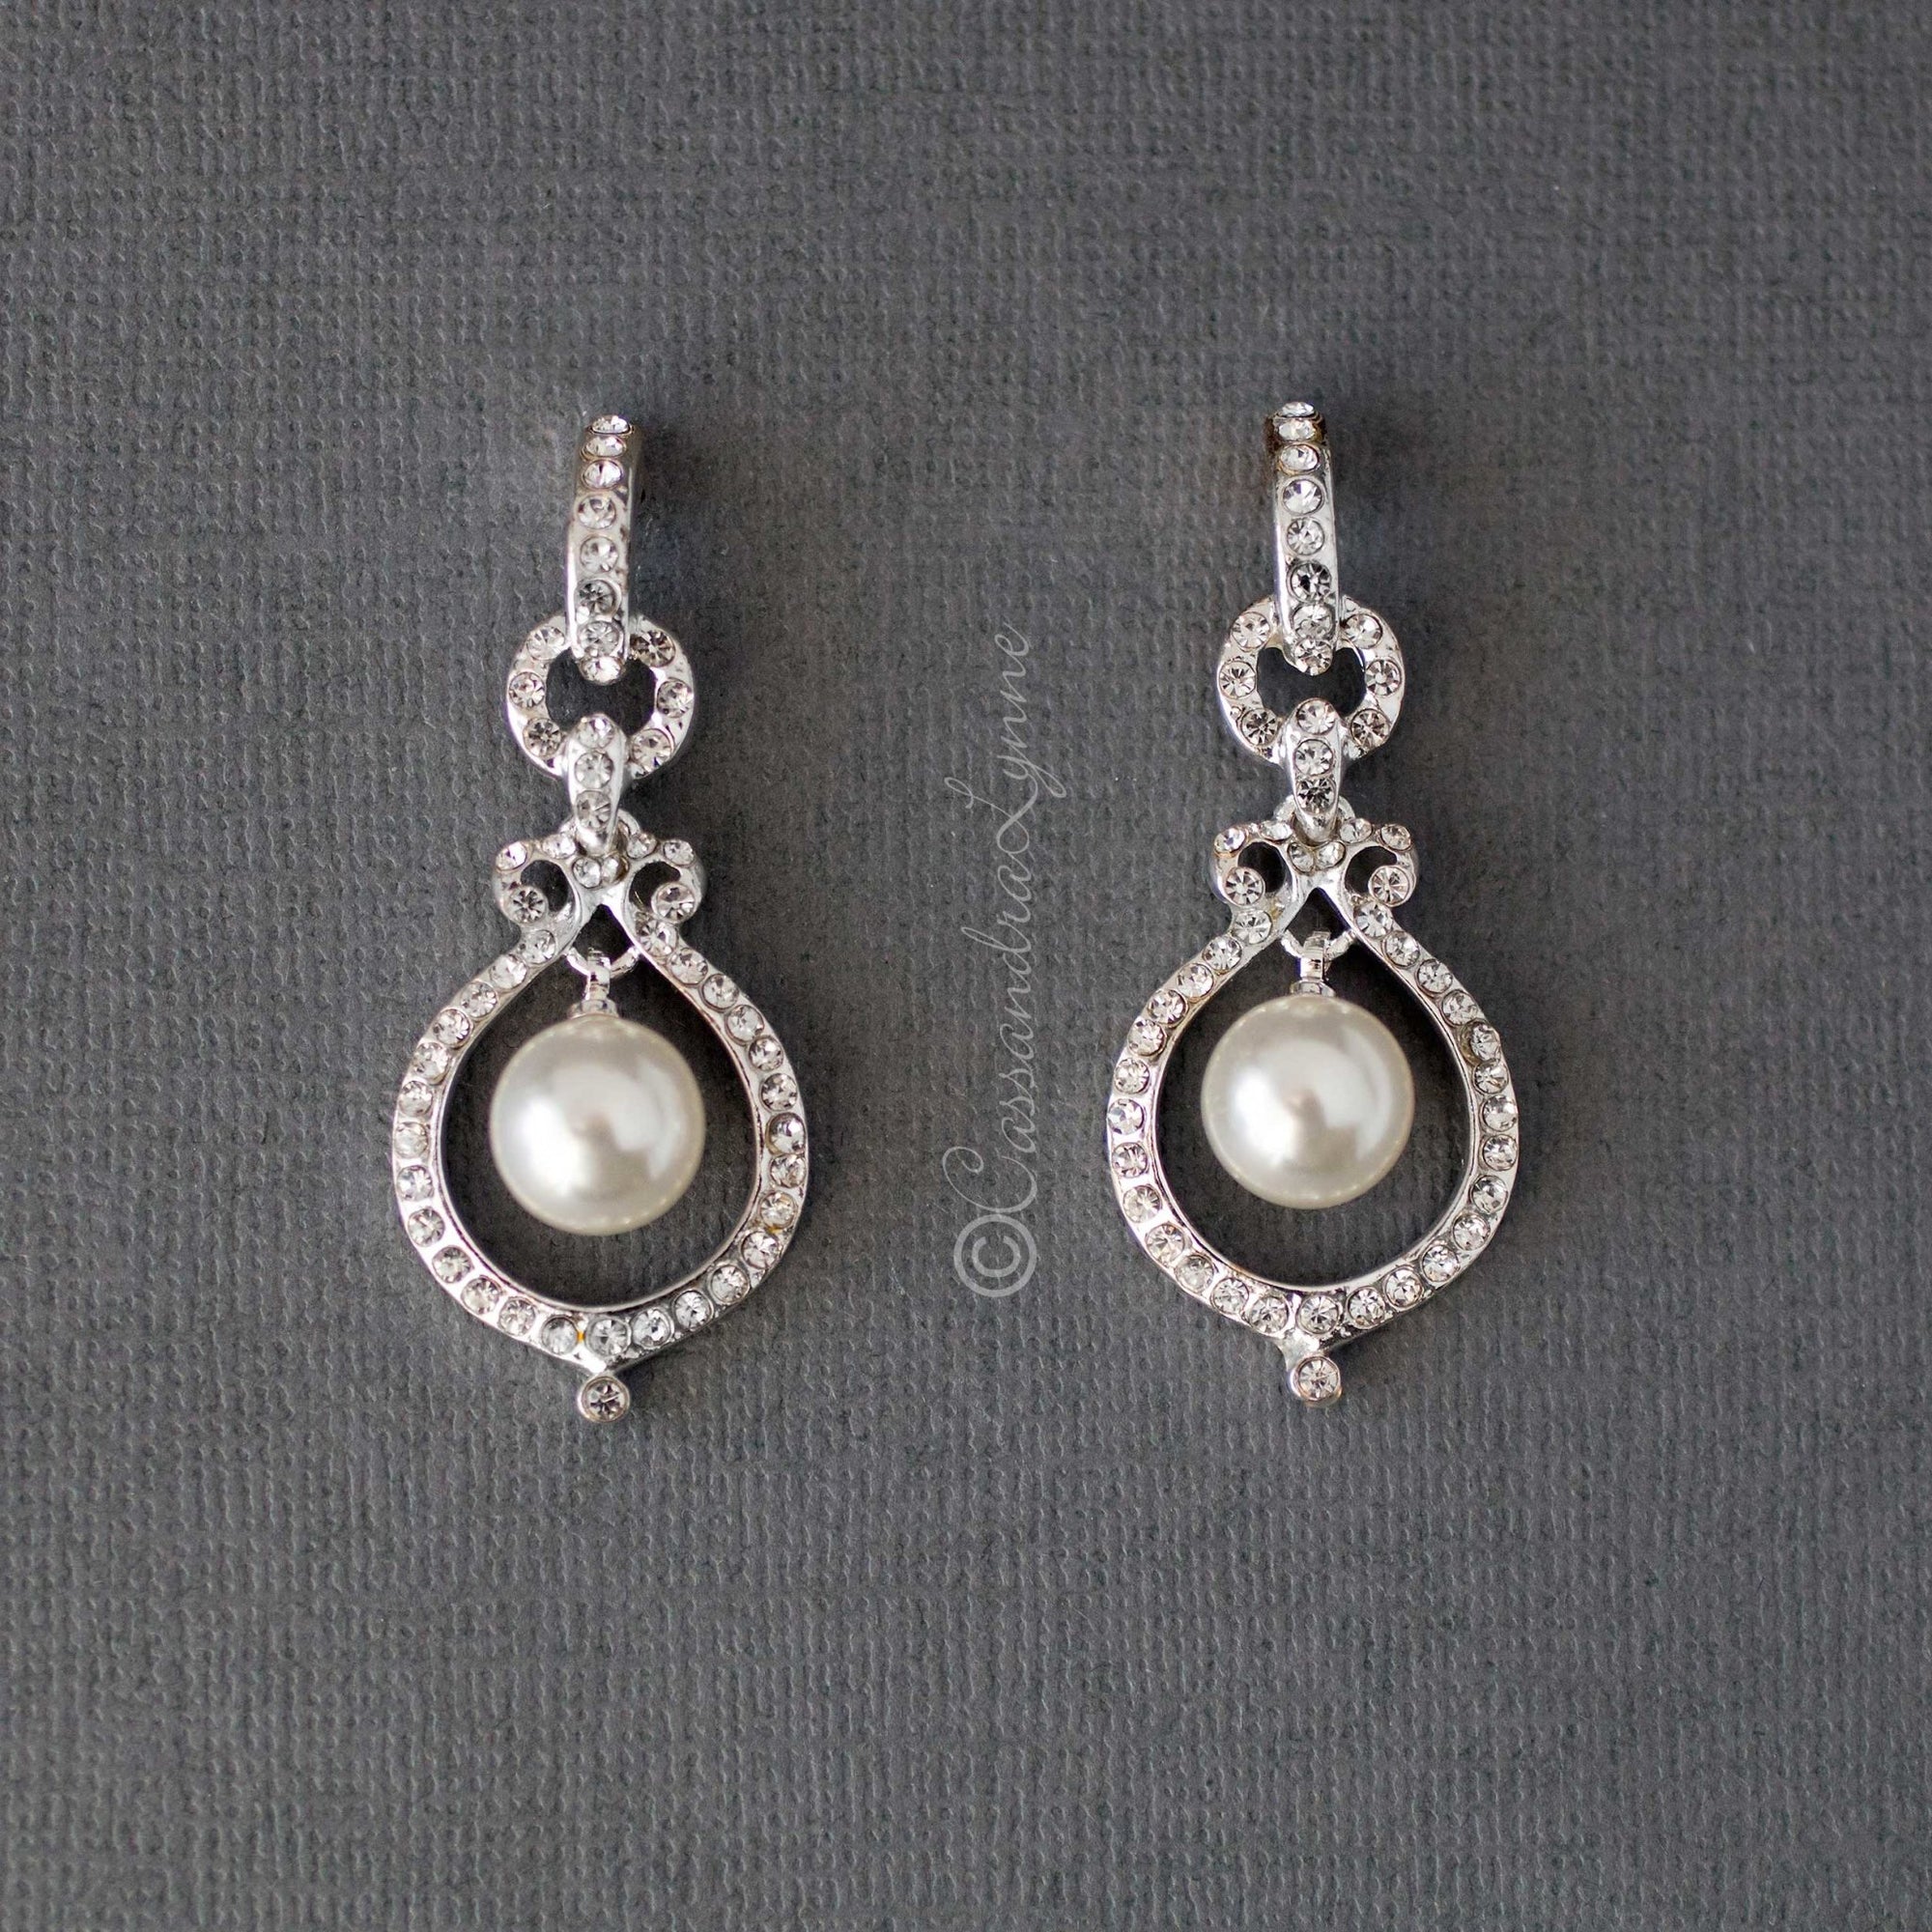 Crystal and Pearl Doorknocker Earrings - Cassandra Lynne